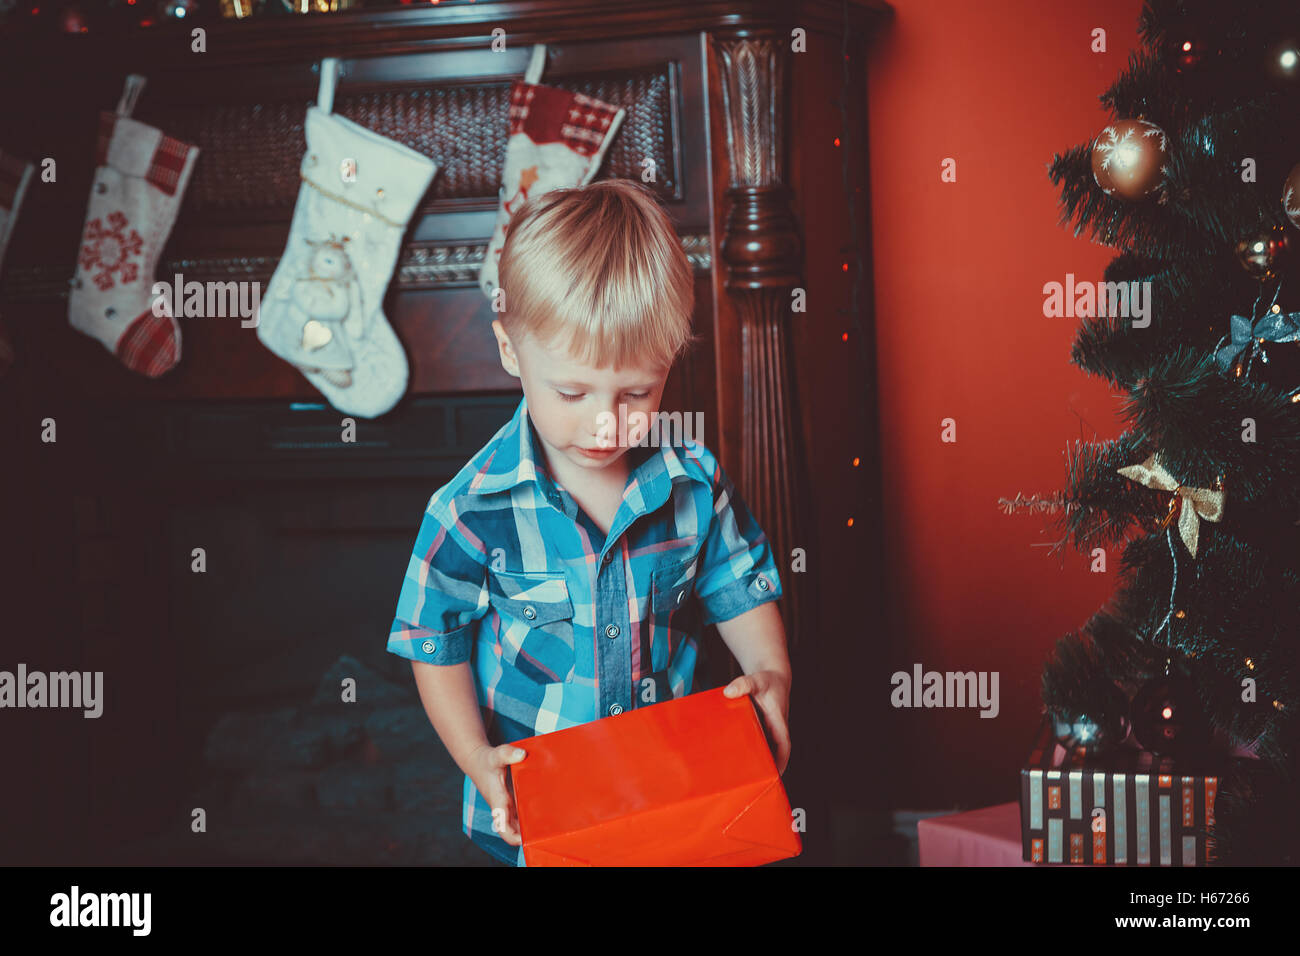 Bel ritratto di un ragazzino con un regalo in mano nel nuovo anno camera con un albero di natale. L'idea per cartoline. focu morbido Foto Stock